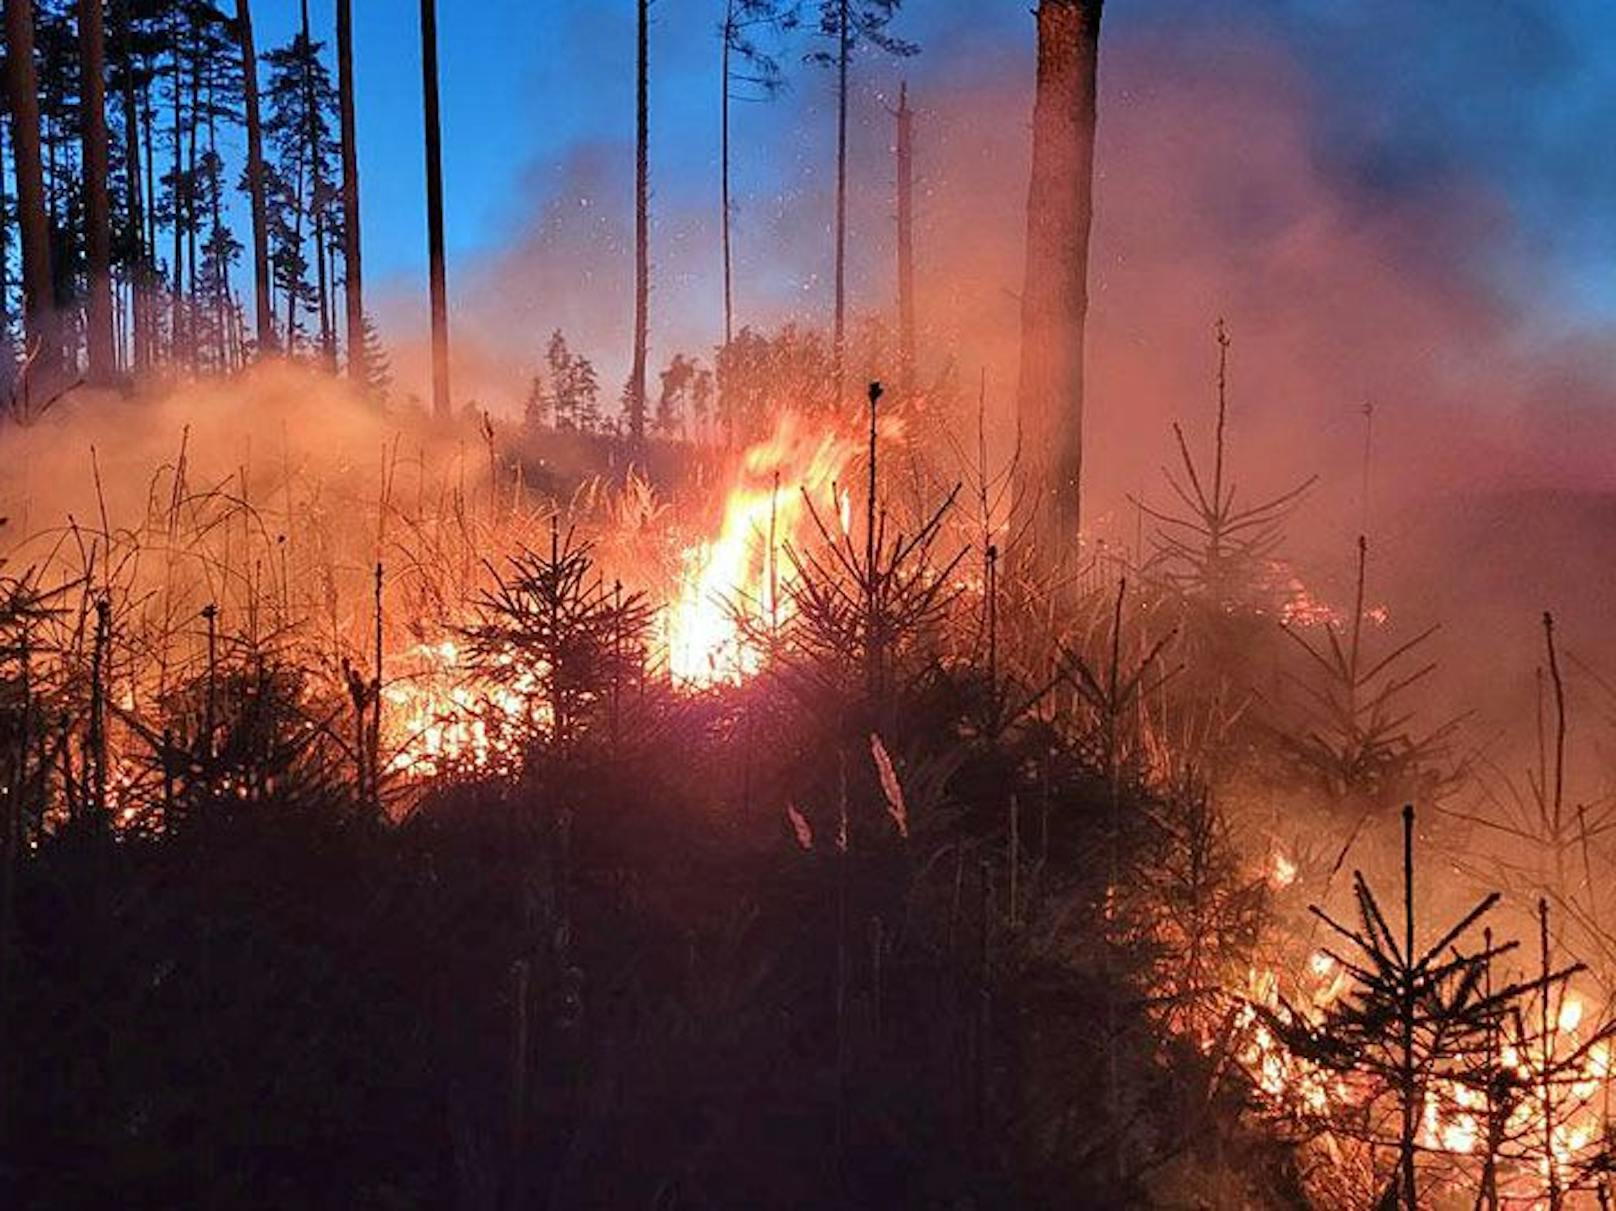 Momentan herrscht wegen Trockenheit eine sehr hohe Waldbrandgefahr. Daher ist Vorsicht in den Wäldern geboten.